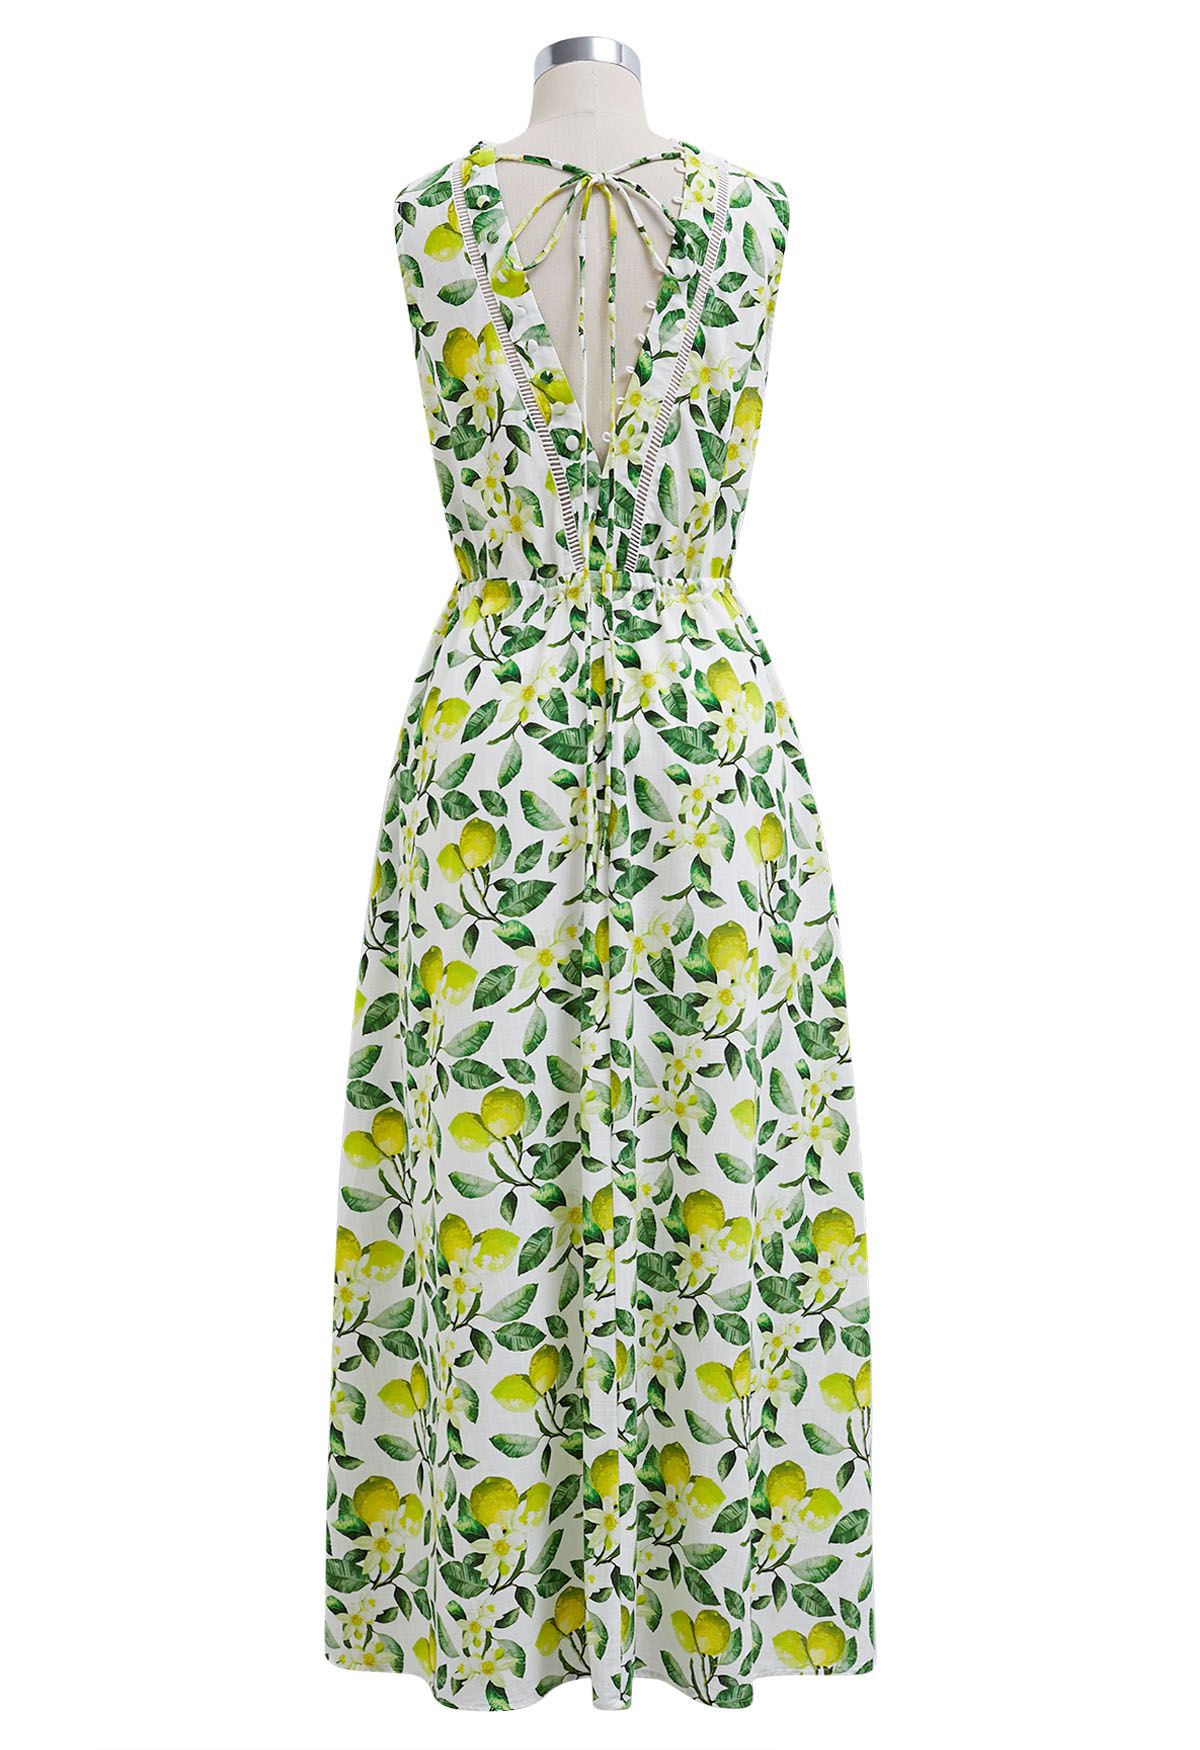 V-Neck Buttoned Sleeveless Dress in Lemon